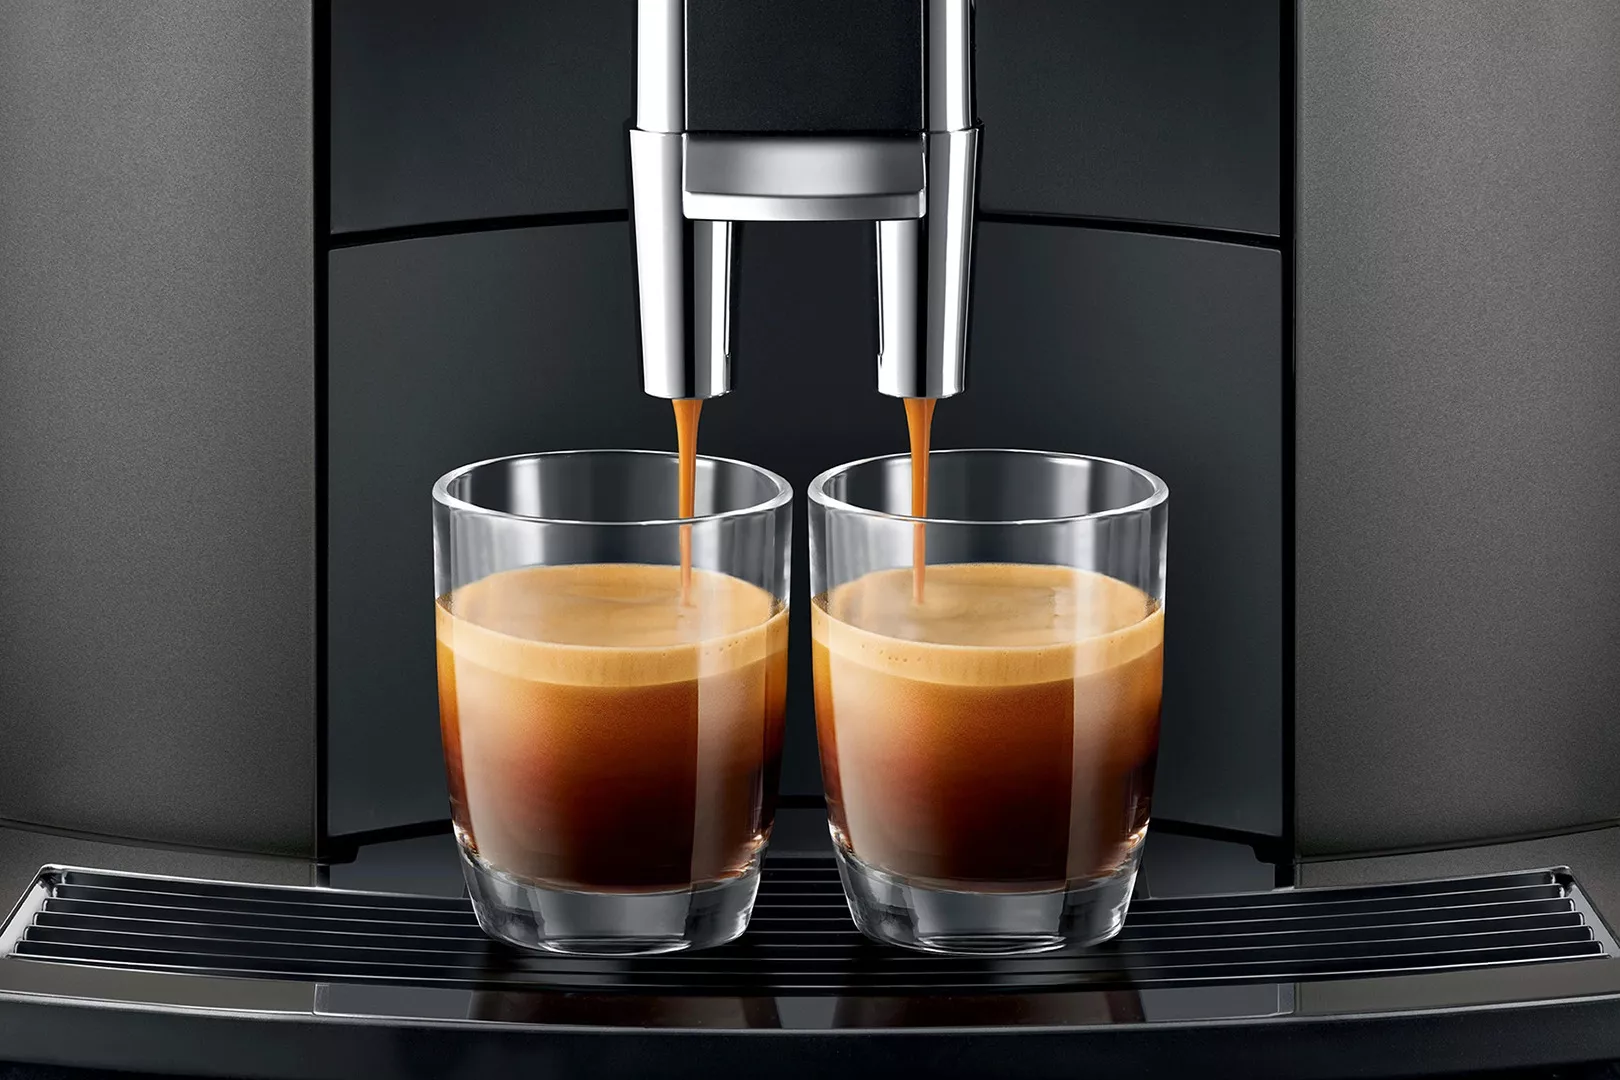 ekspres do kawy jura we8 chrome grafitowy zblizenie na zaparzanie kawy w dwoch malych szklankach